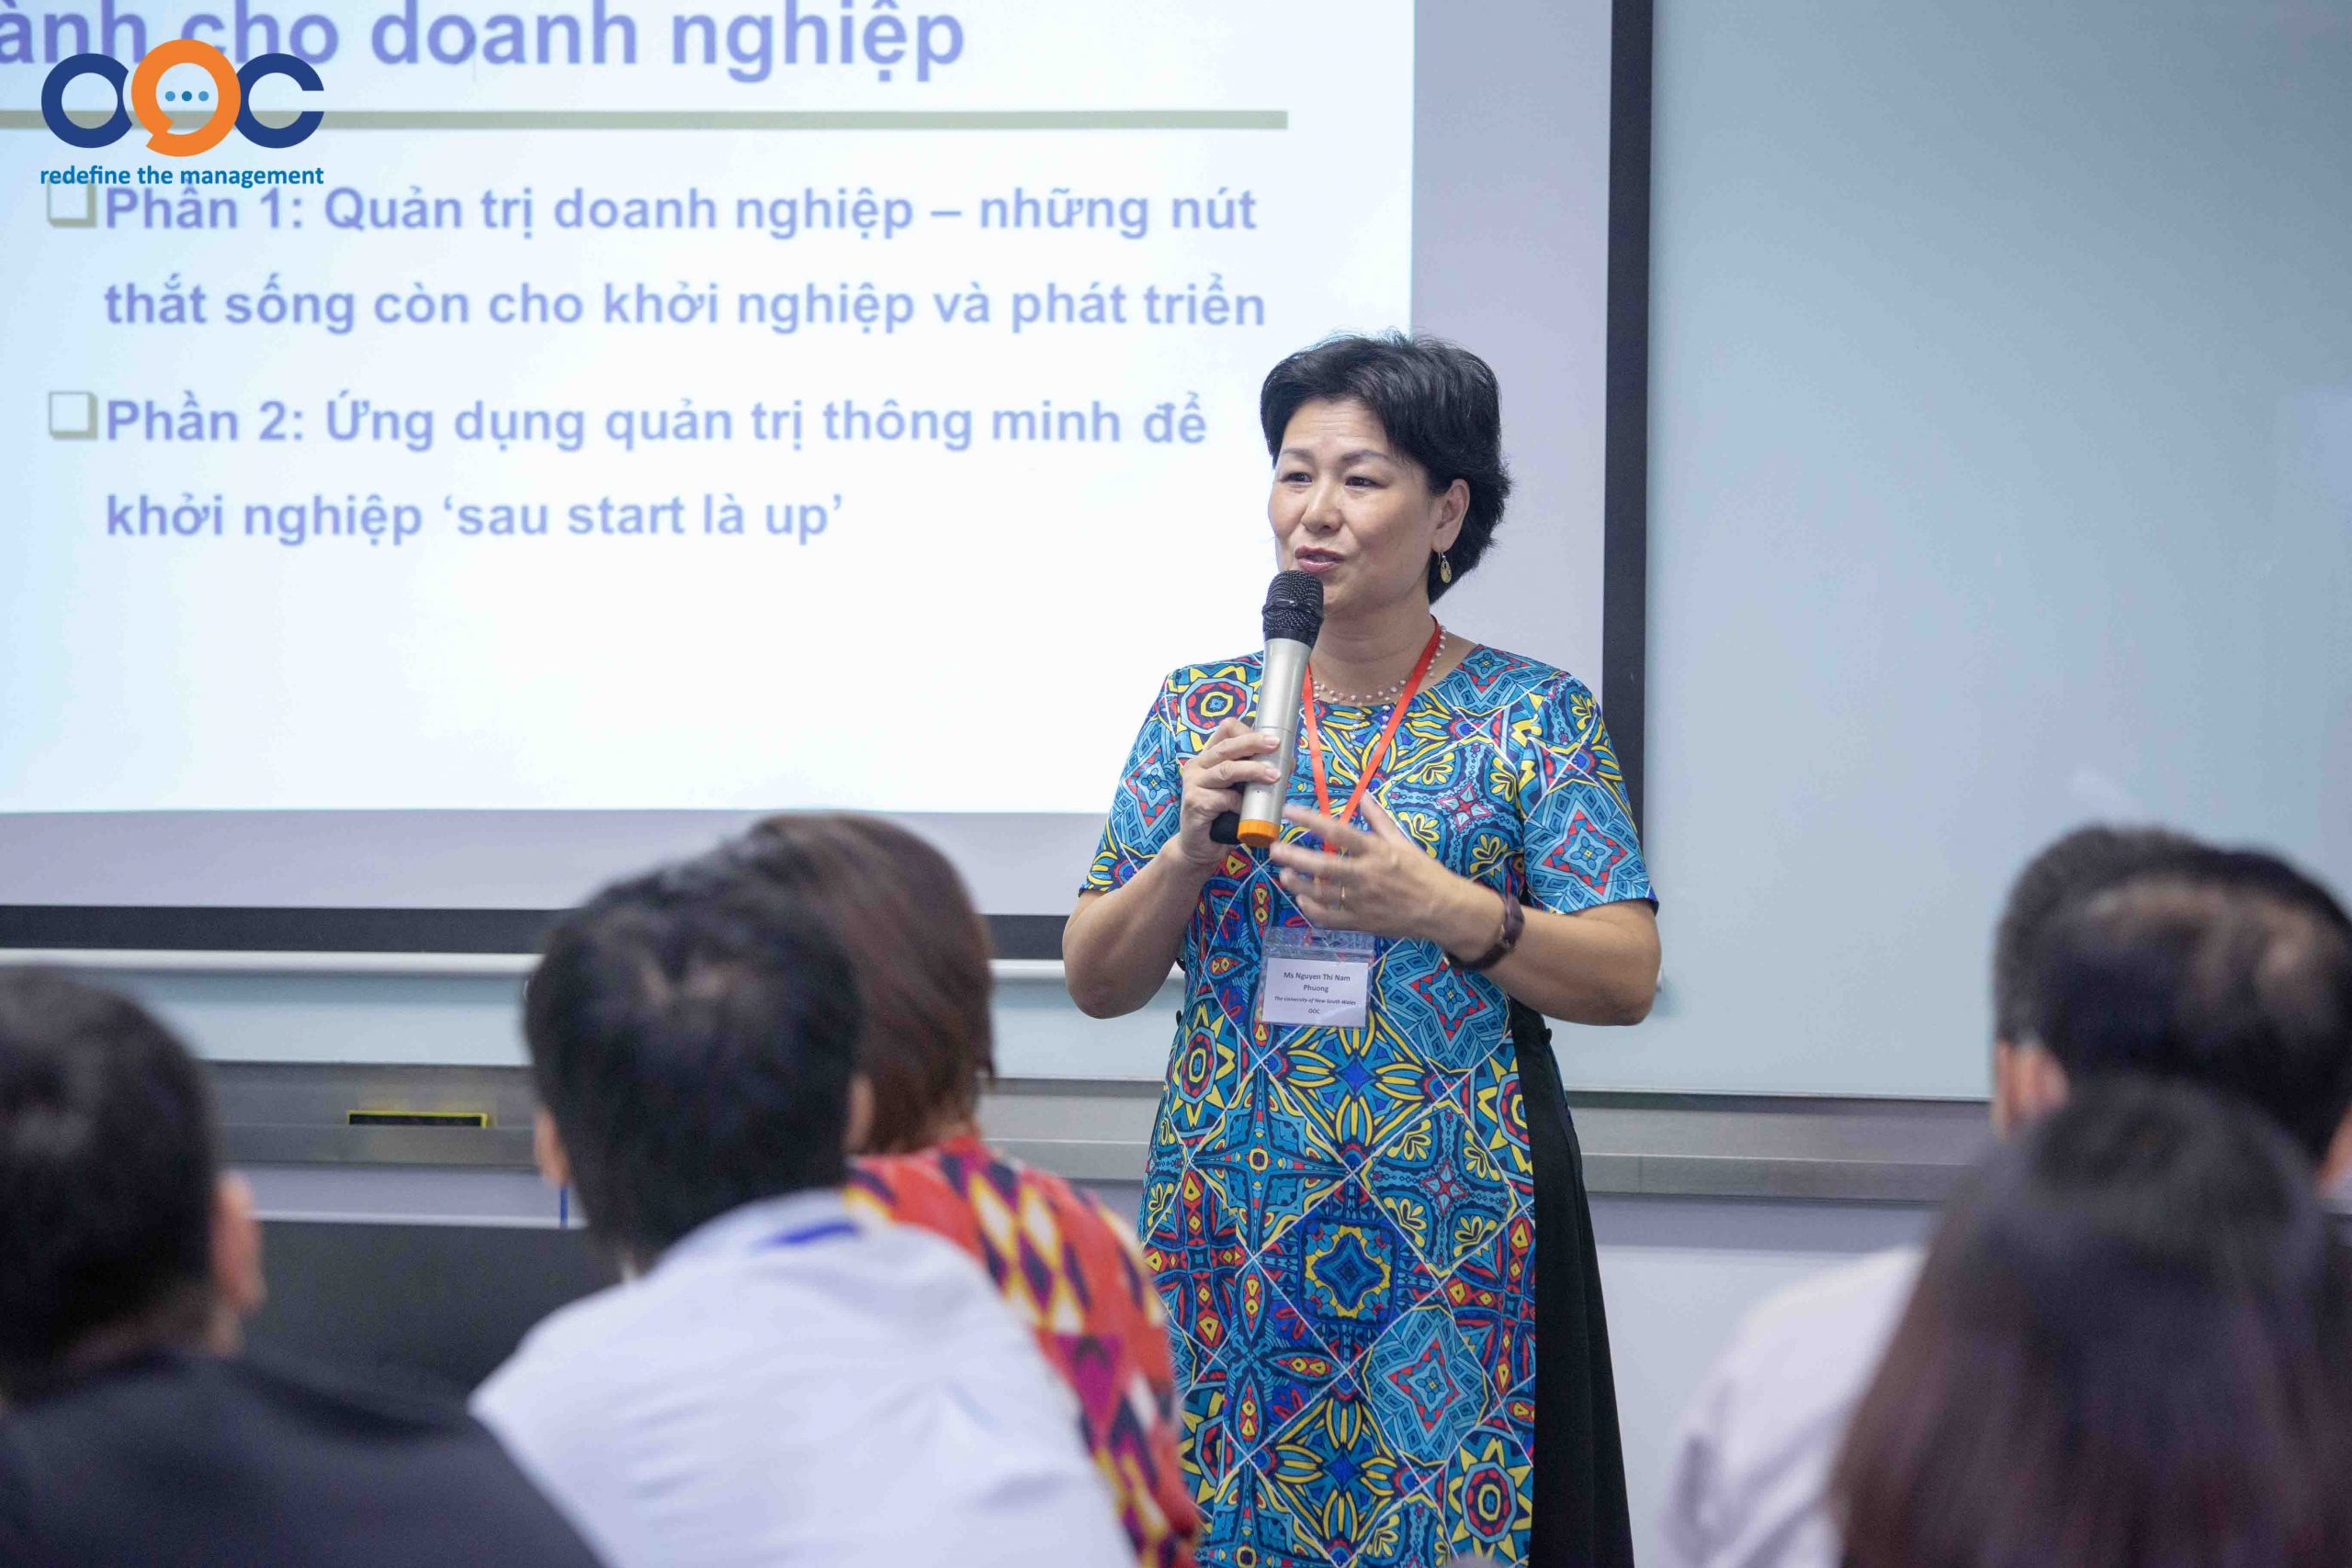 Diễn giả Nguyễn Thị Nam Phương chia sẻ kinh nghiệm quản trị DN